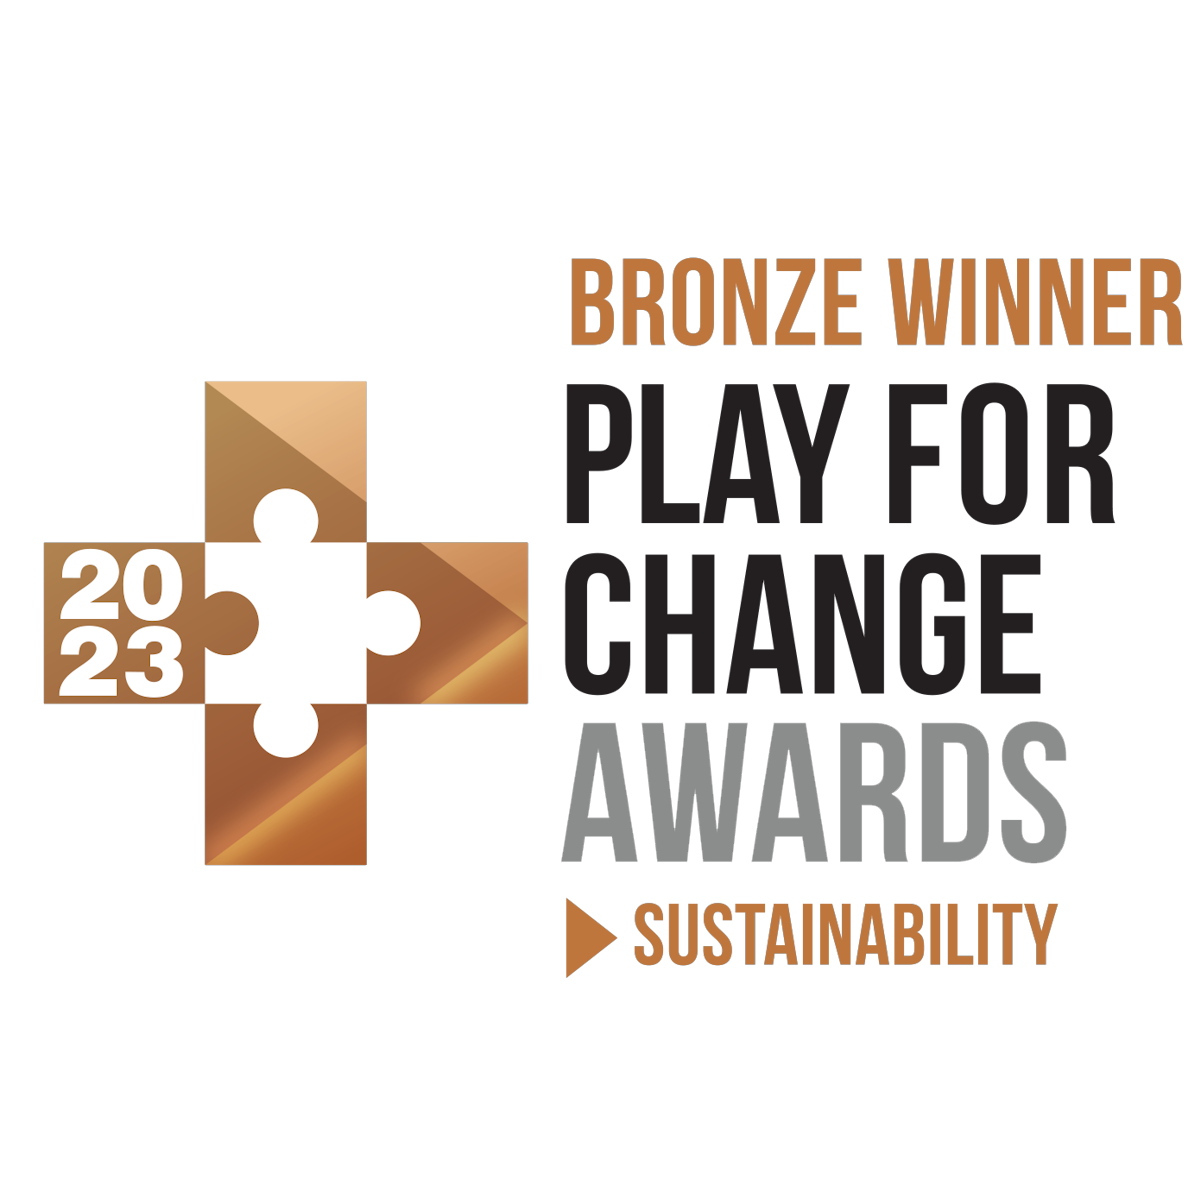 Korko mit Play for Change Award ausgezeichnet